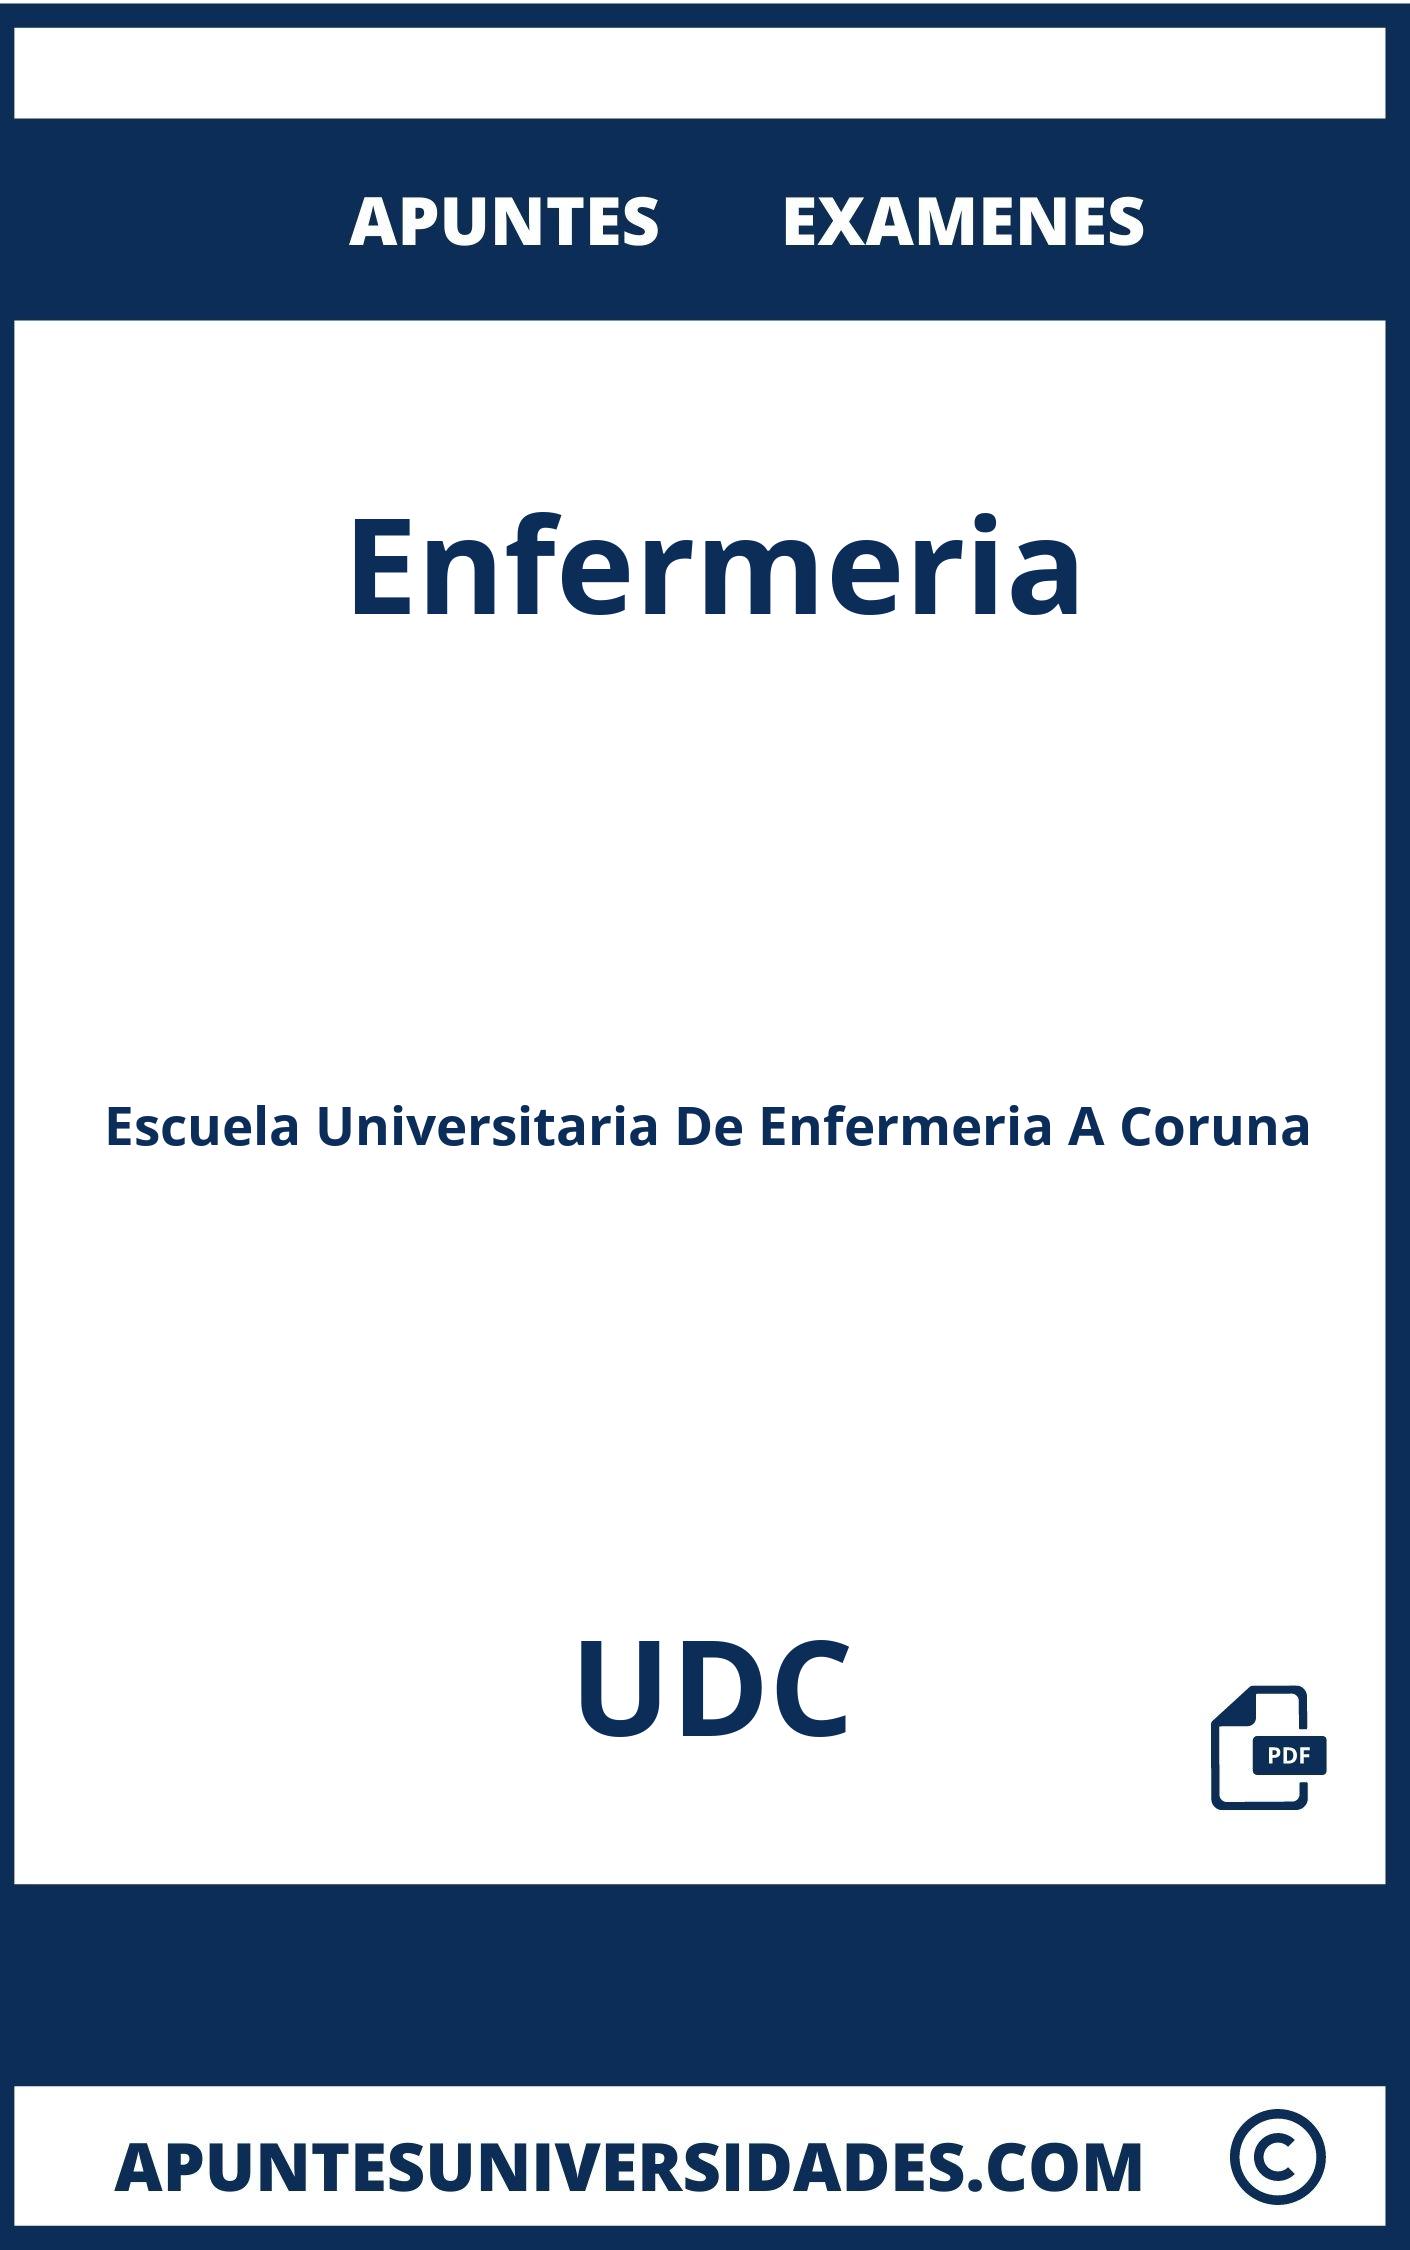 Examenes y Apuntes Enfermeria UDC